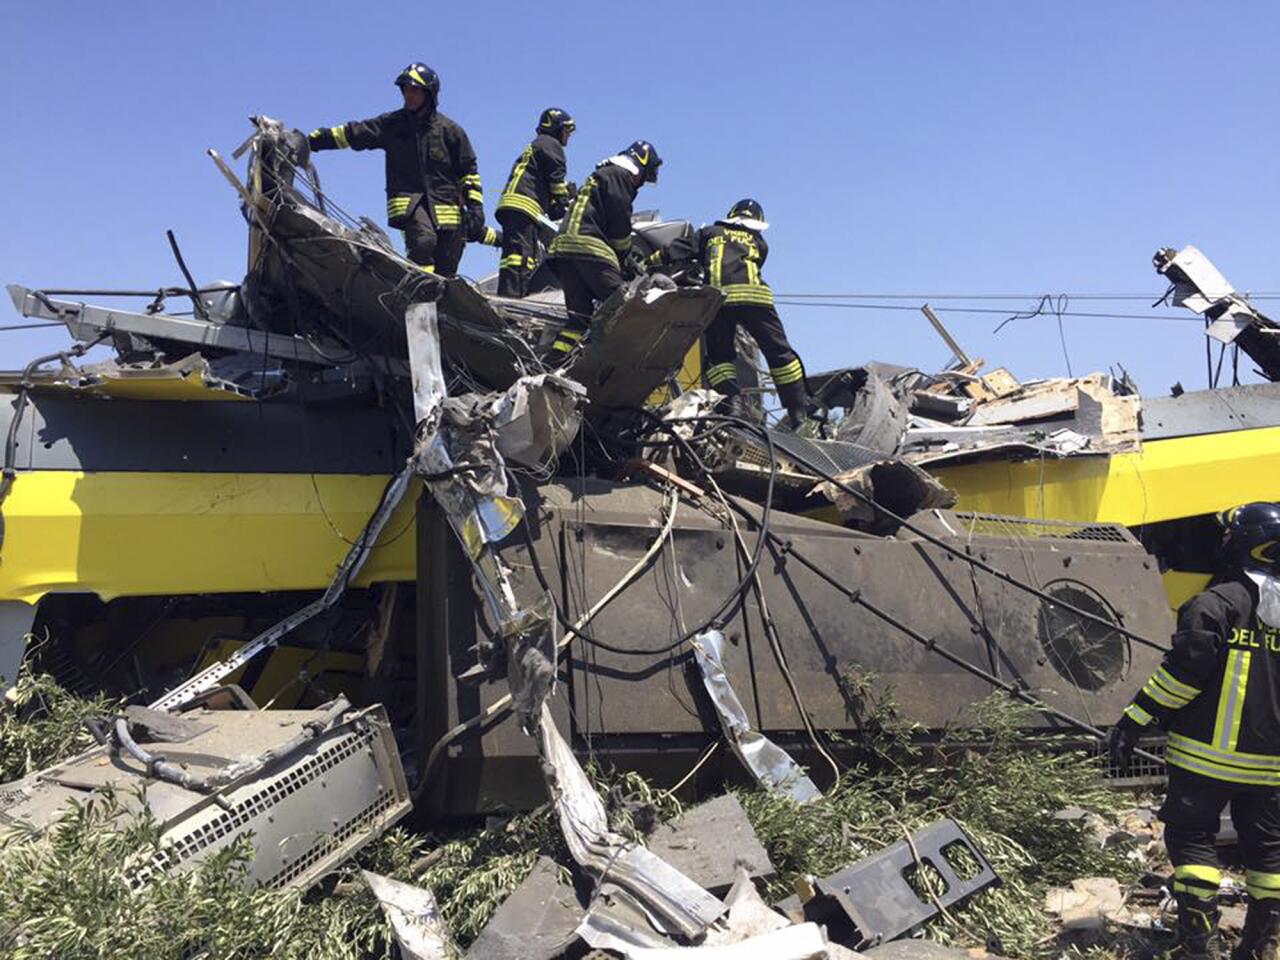 Train crash in Italy kills 20